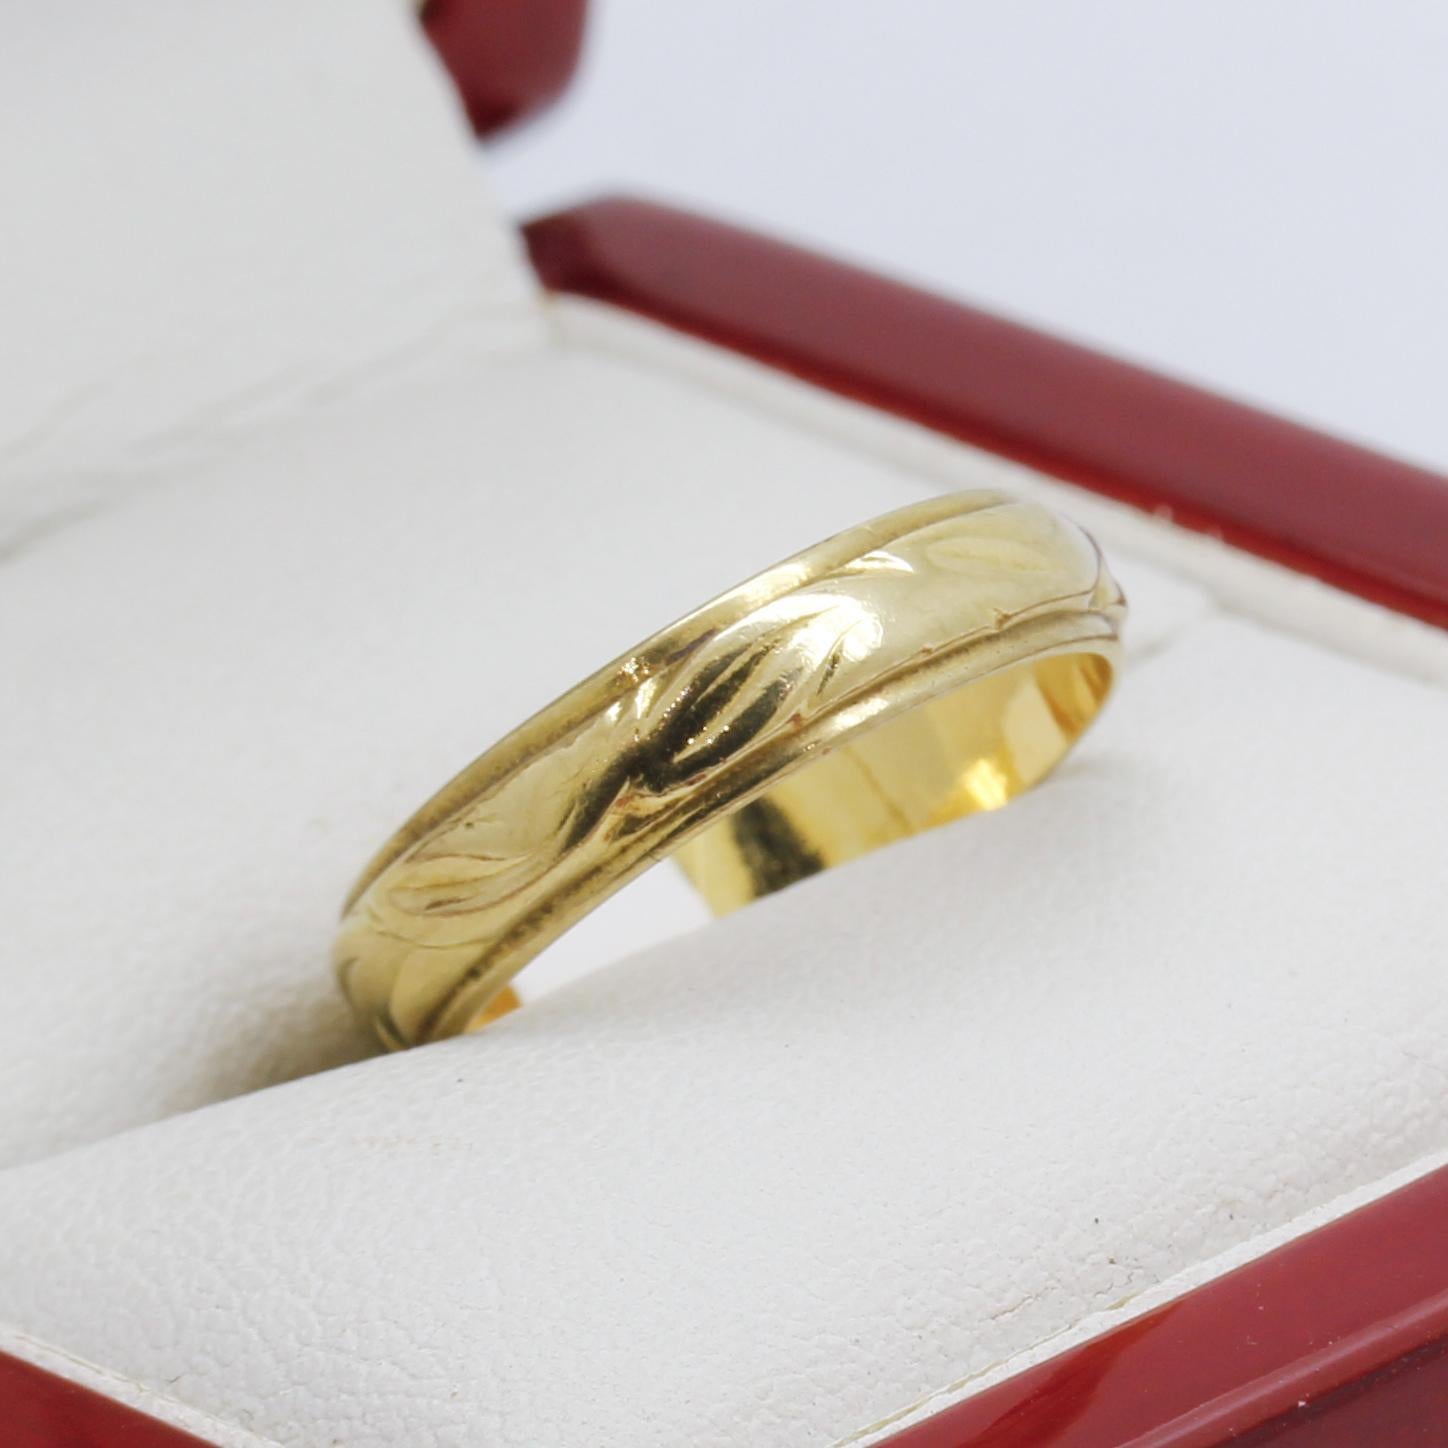 Bague vintage en or jaune 18ct (anneau fantaisie) 
Marqué 18CT
Largeur 4,2 mm
Épaisseur 1,3 mm
Poids 3.55 grammes
Taille de l'anneau N